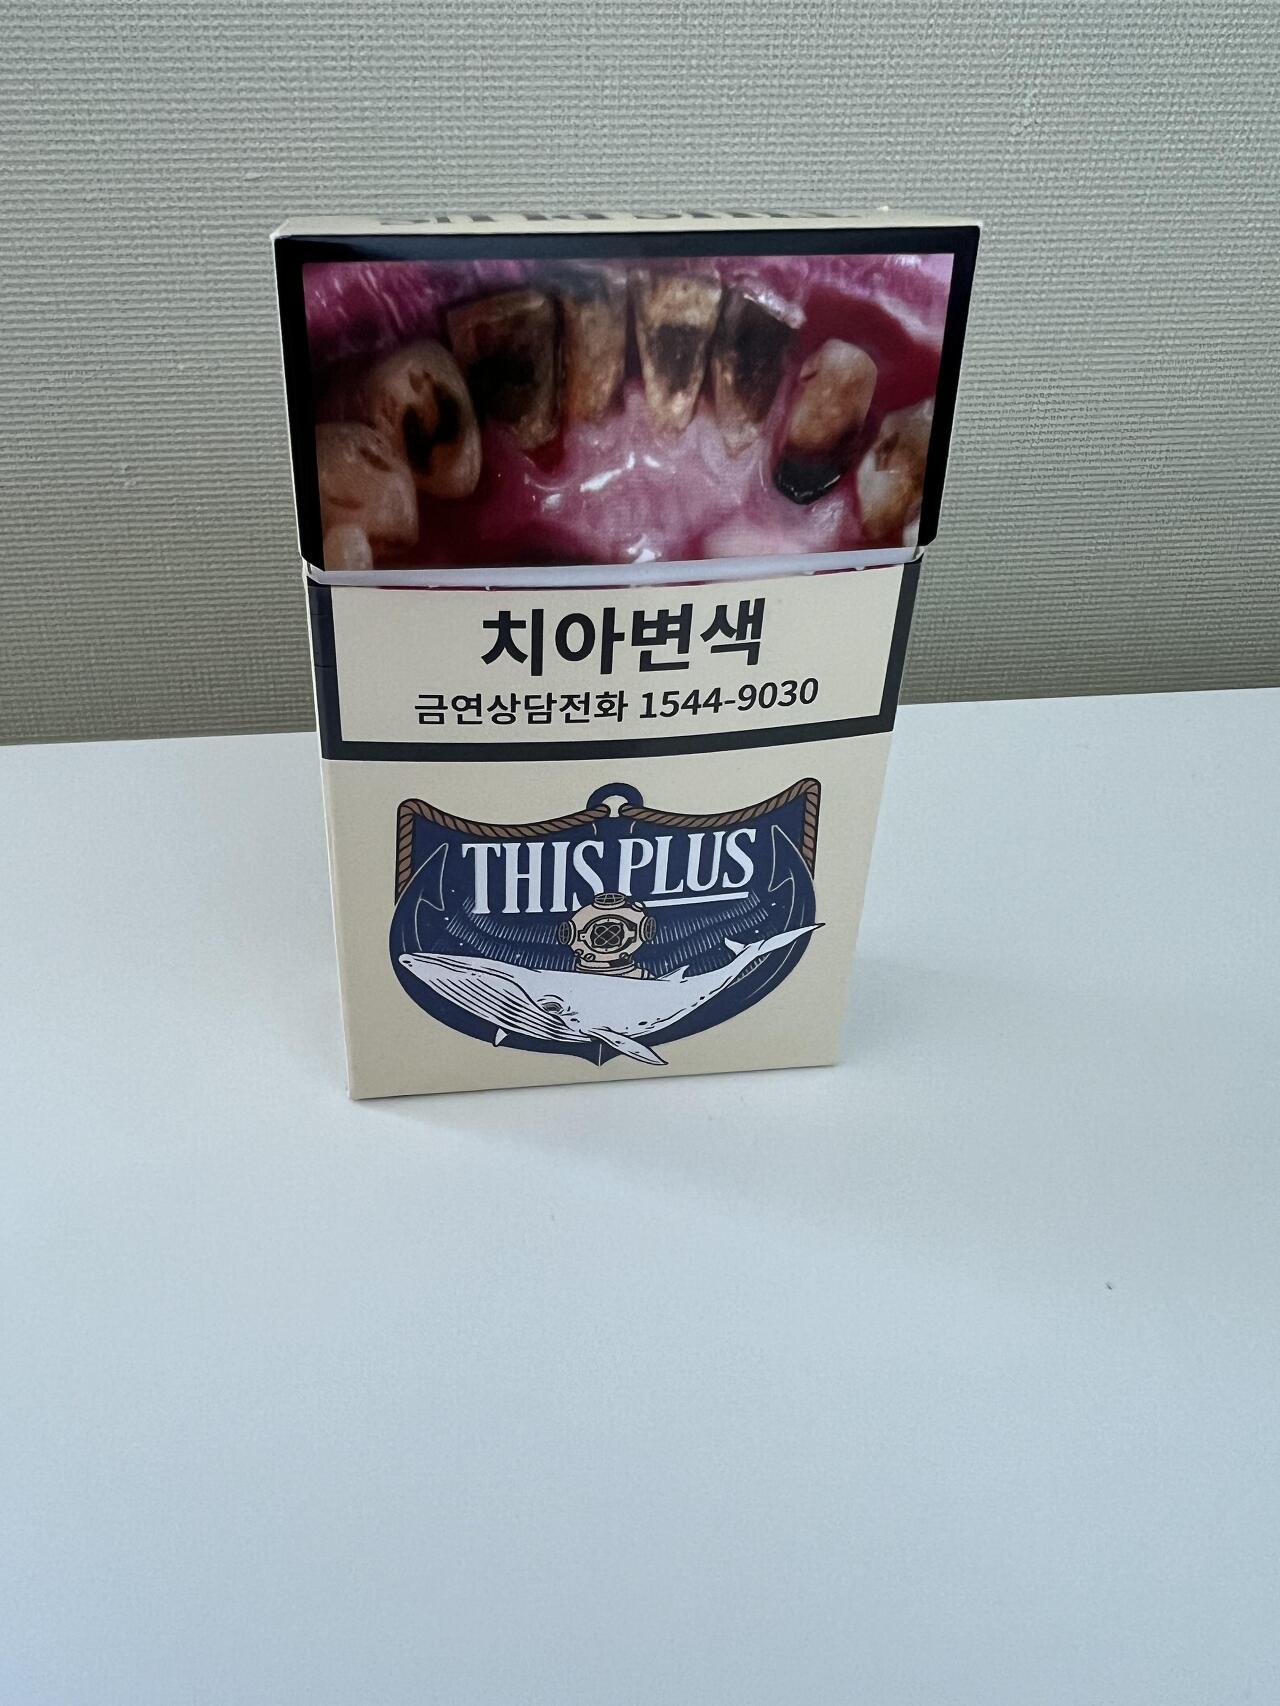 Packaging of ThisPlus